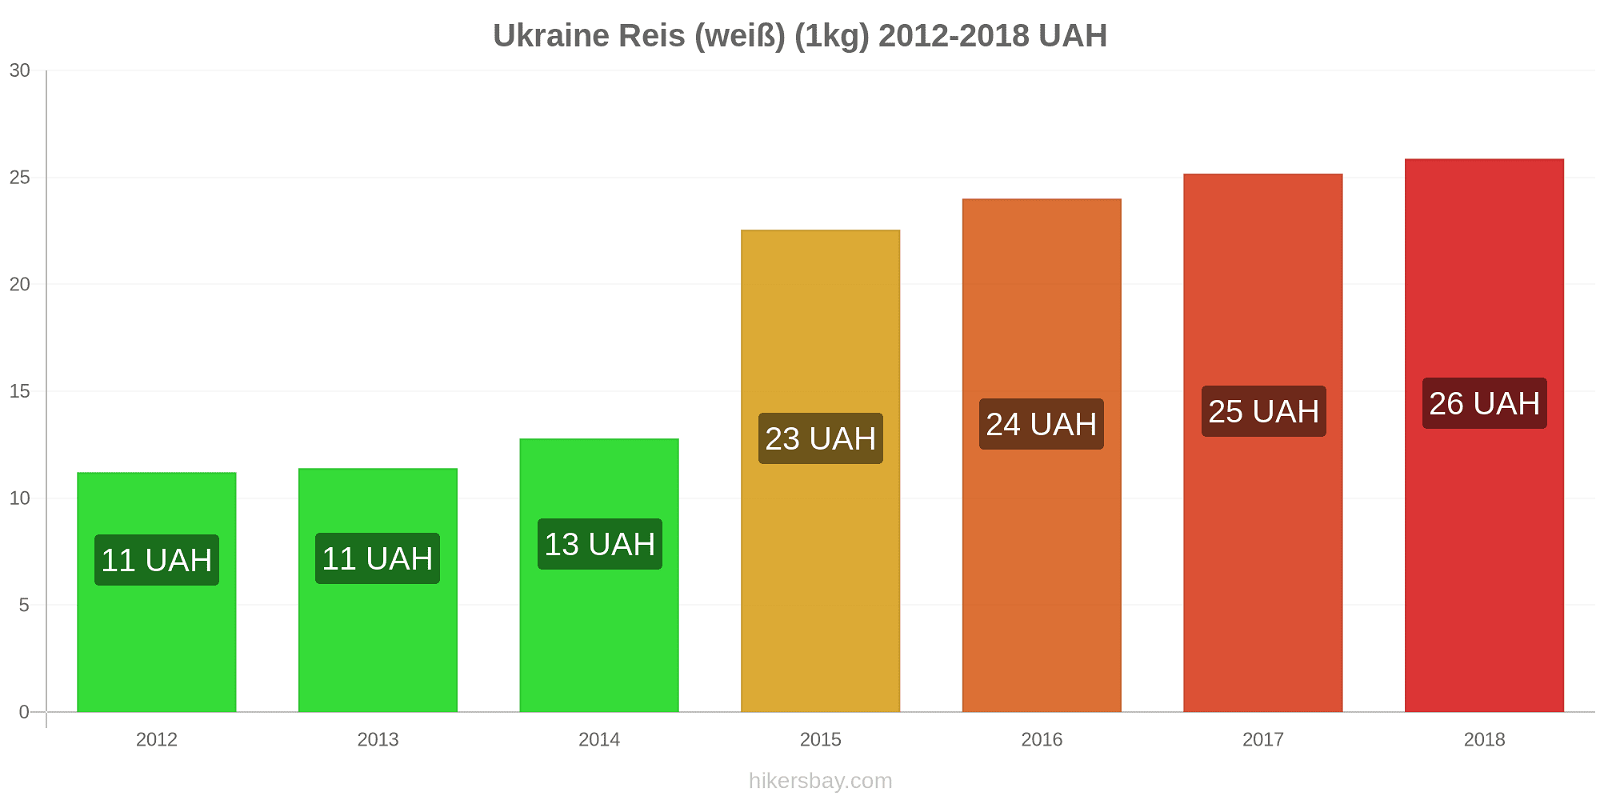 Ukraine Preisänderungen Reis (weiß) (1kg) hikersbay.com